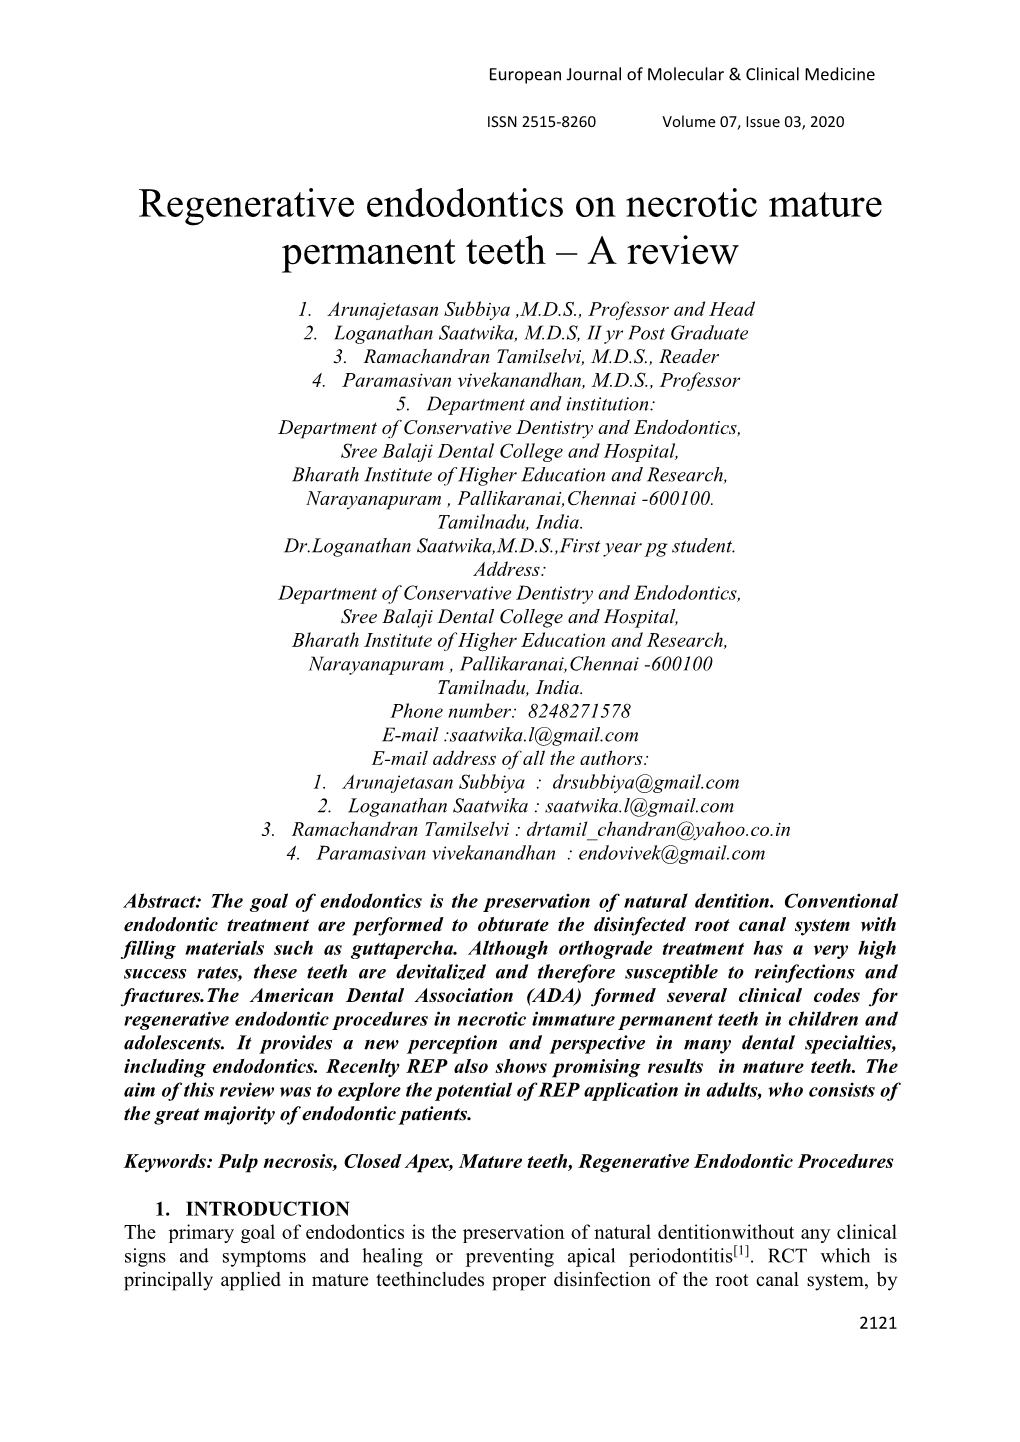 Regenerative Endodontics on Necrotic Mature Permanent Teeth – a Review